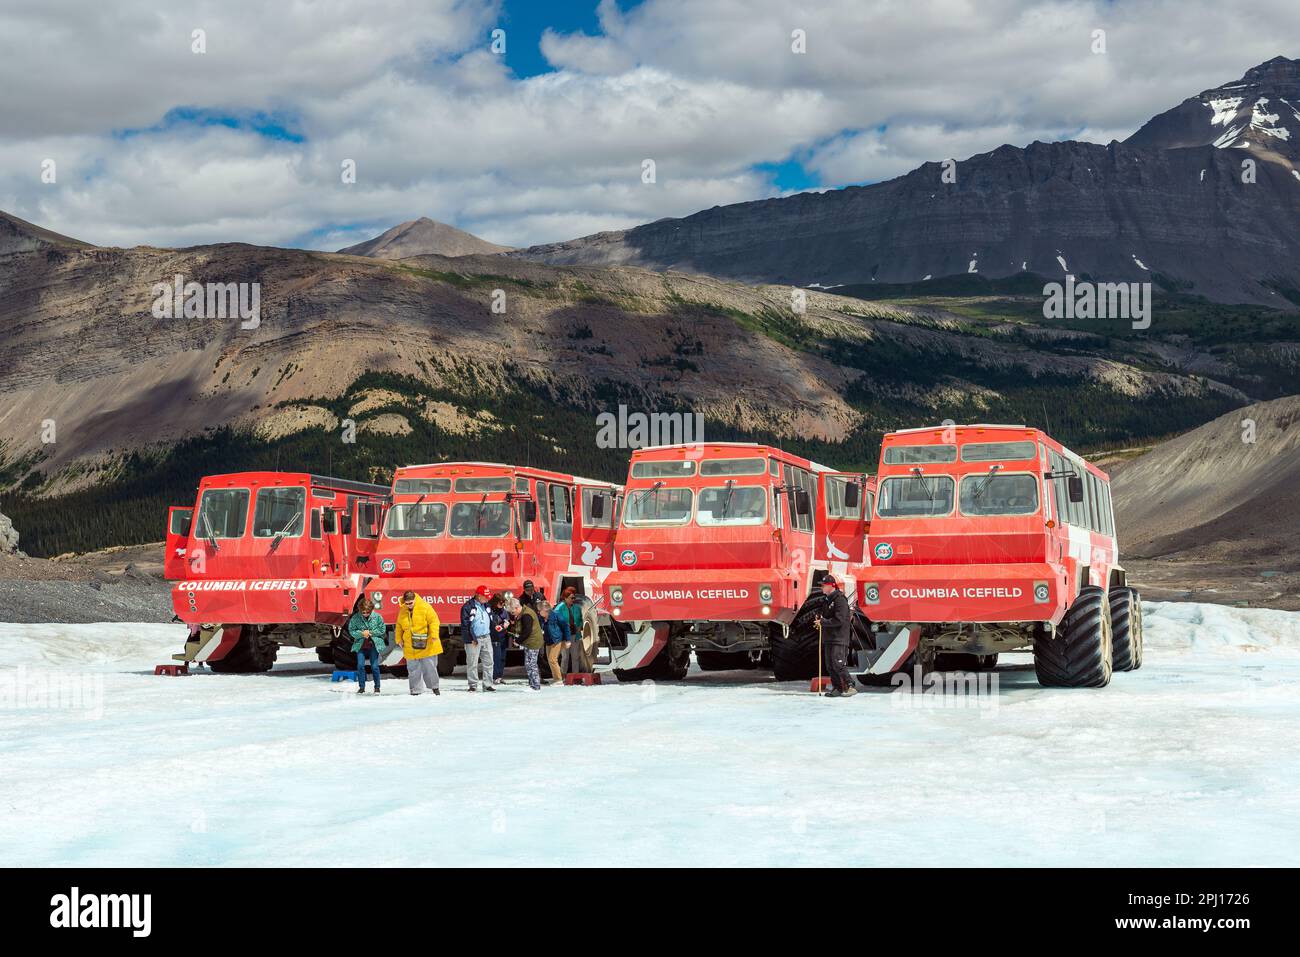 Riesige Columbia Icefield Trucks und Touristen auf dem Eis des Athabasca Gletschers, Jasper Nationalpark, Kanada. Stockfoto